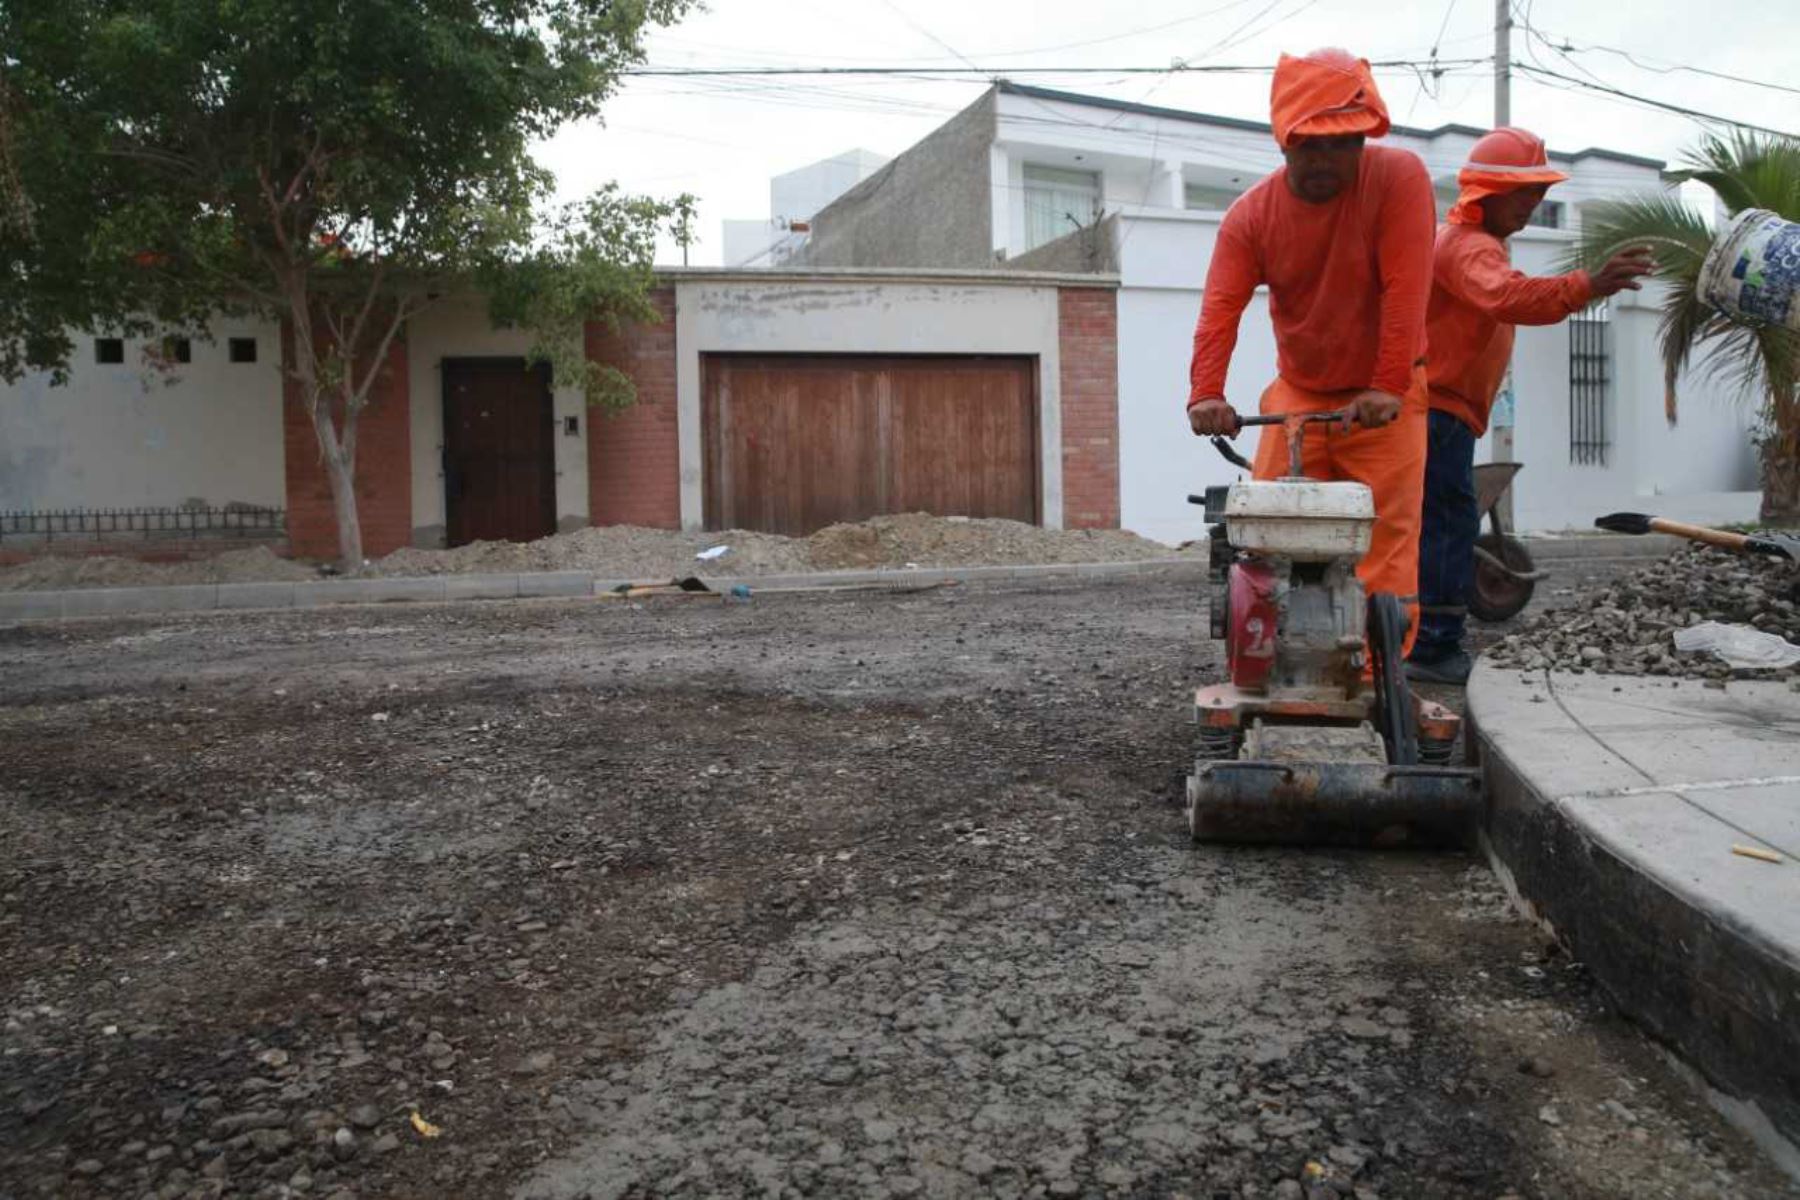 Noventa y nueve millones para reconstruir las vías de comunicación y parte de la infraestructura agraria afectada por El Niño Costero en 8 regiones del país, transfirió hoy el gobierno a través del Decreto Supremo 143-2018-EF, publicado en el diario oficial El Peruano.